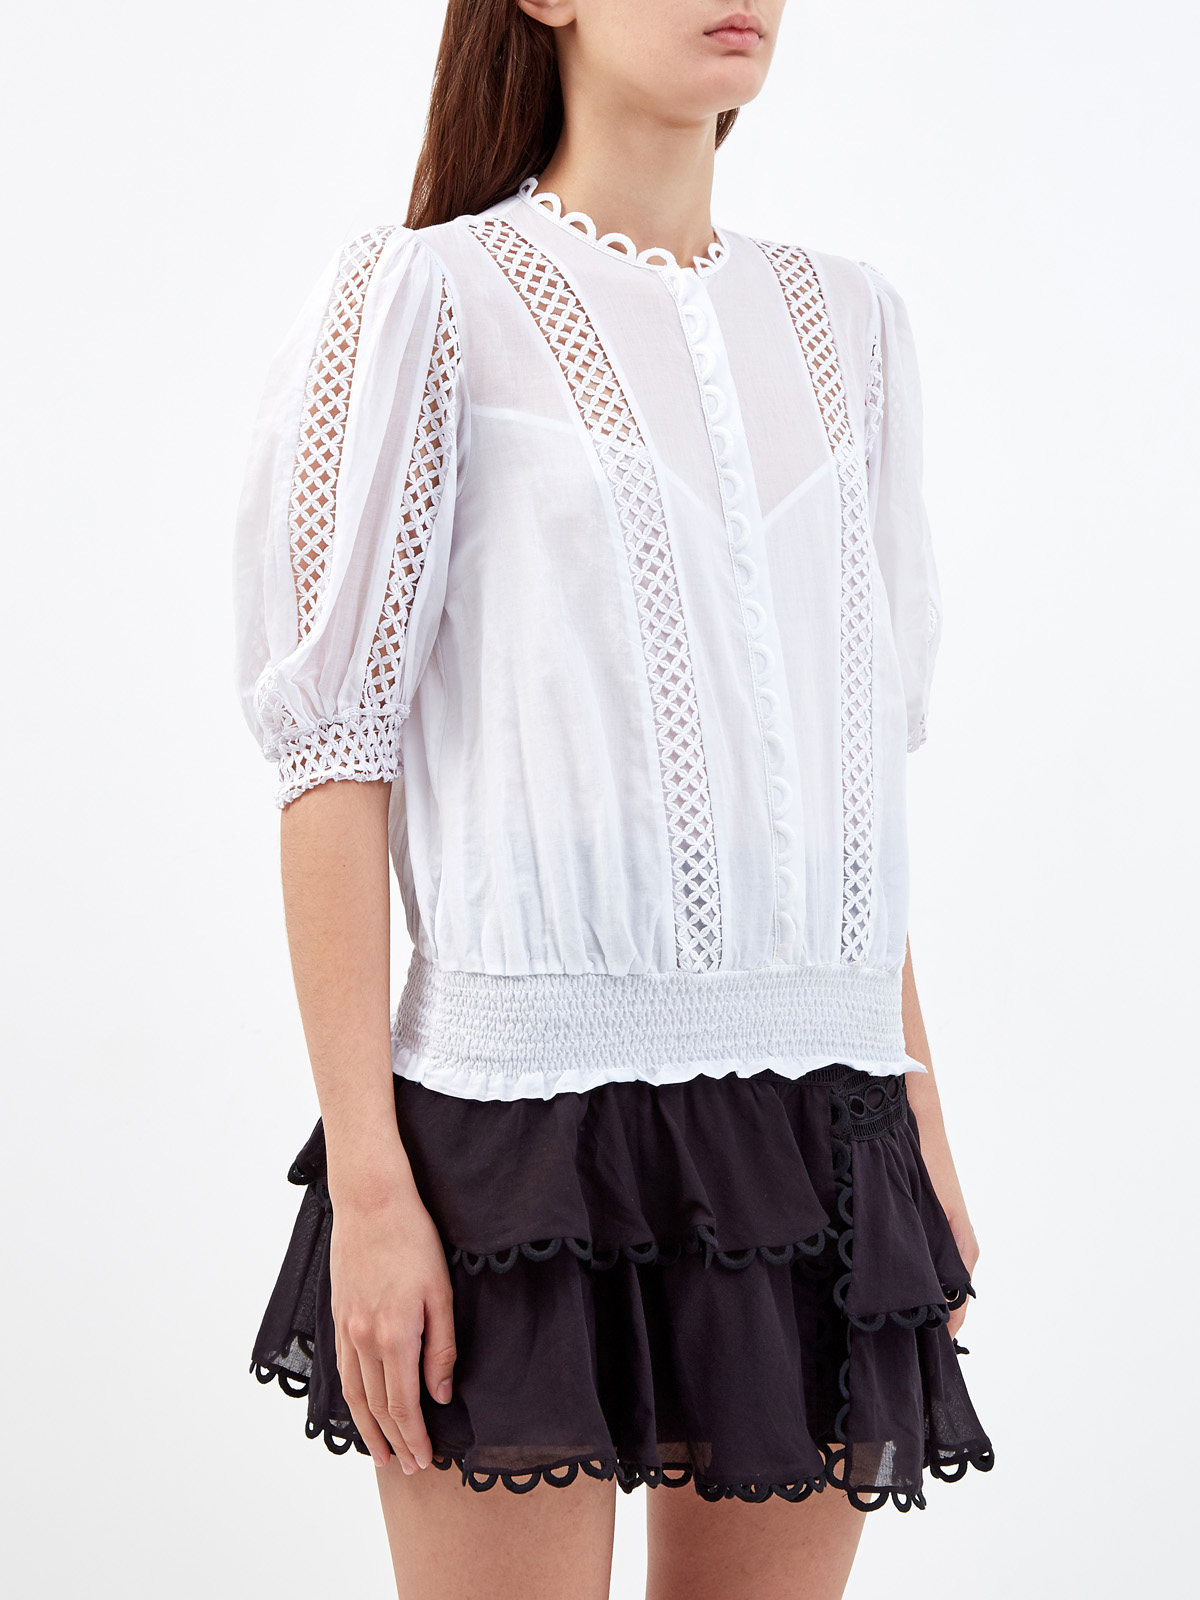 Легкая блуза Estela с ажурной вышивкой в тон CHARO RUIZ IBIZA, цвет белый, размер S;M;L;XL - фото 3